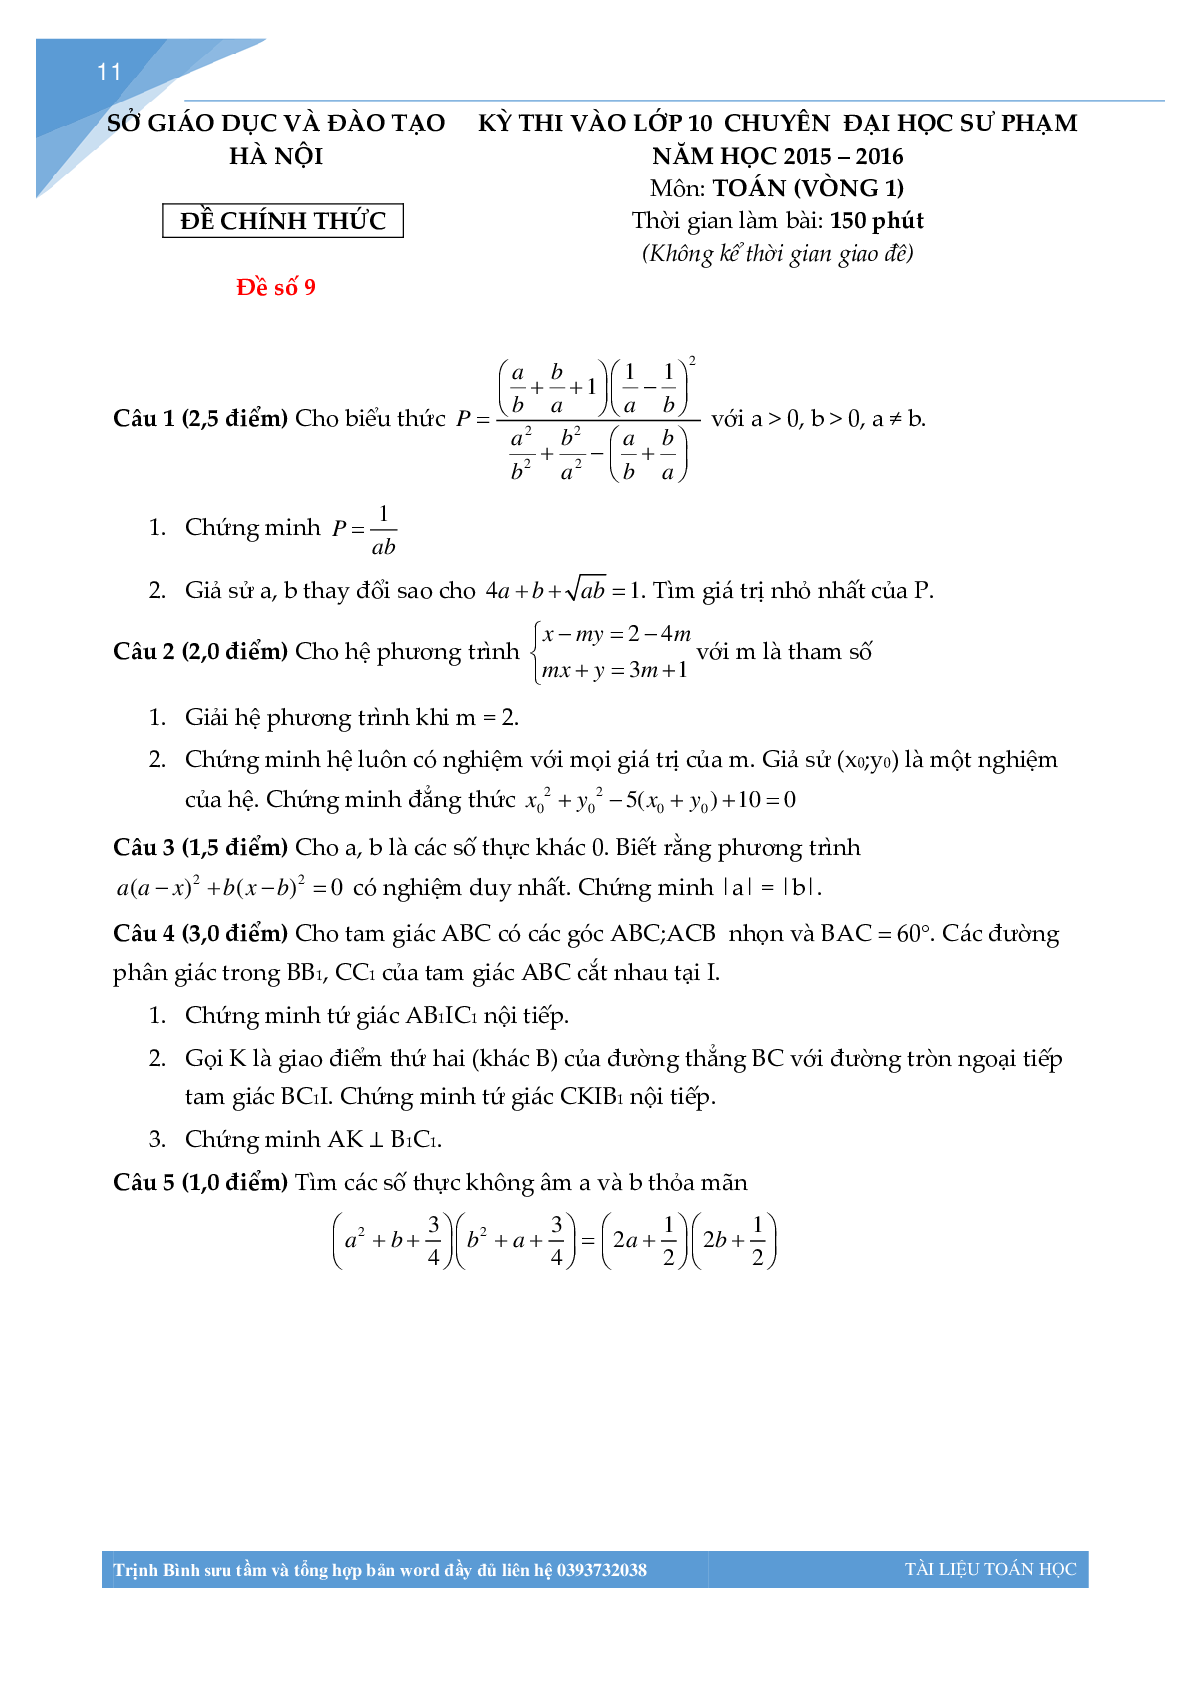 Bộ đề thi toán vào lớp 10 chuyên đại học sư phạm Hà Nội (trang 10)